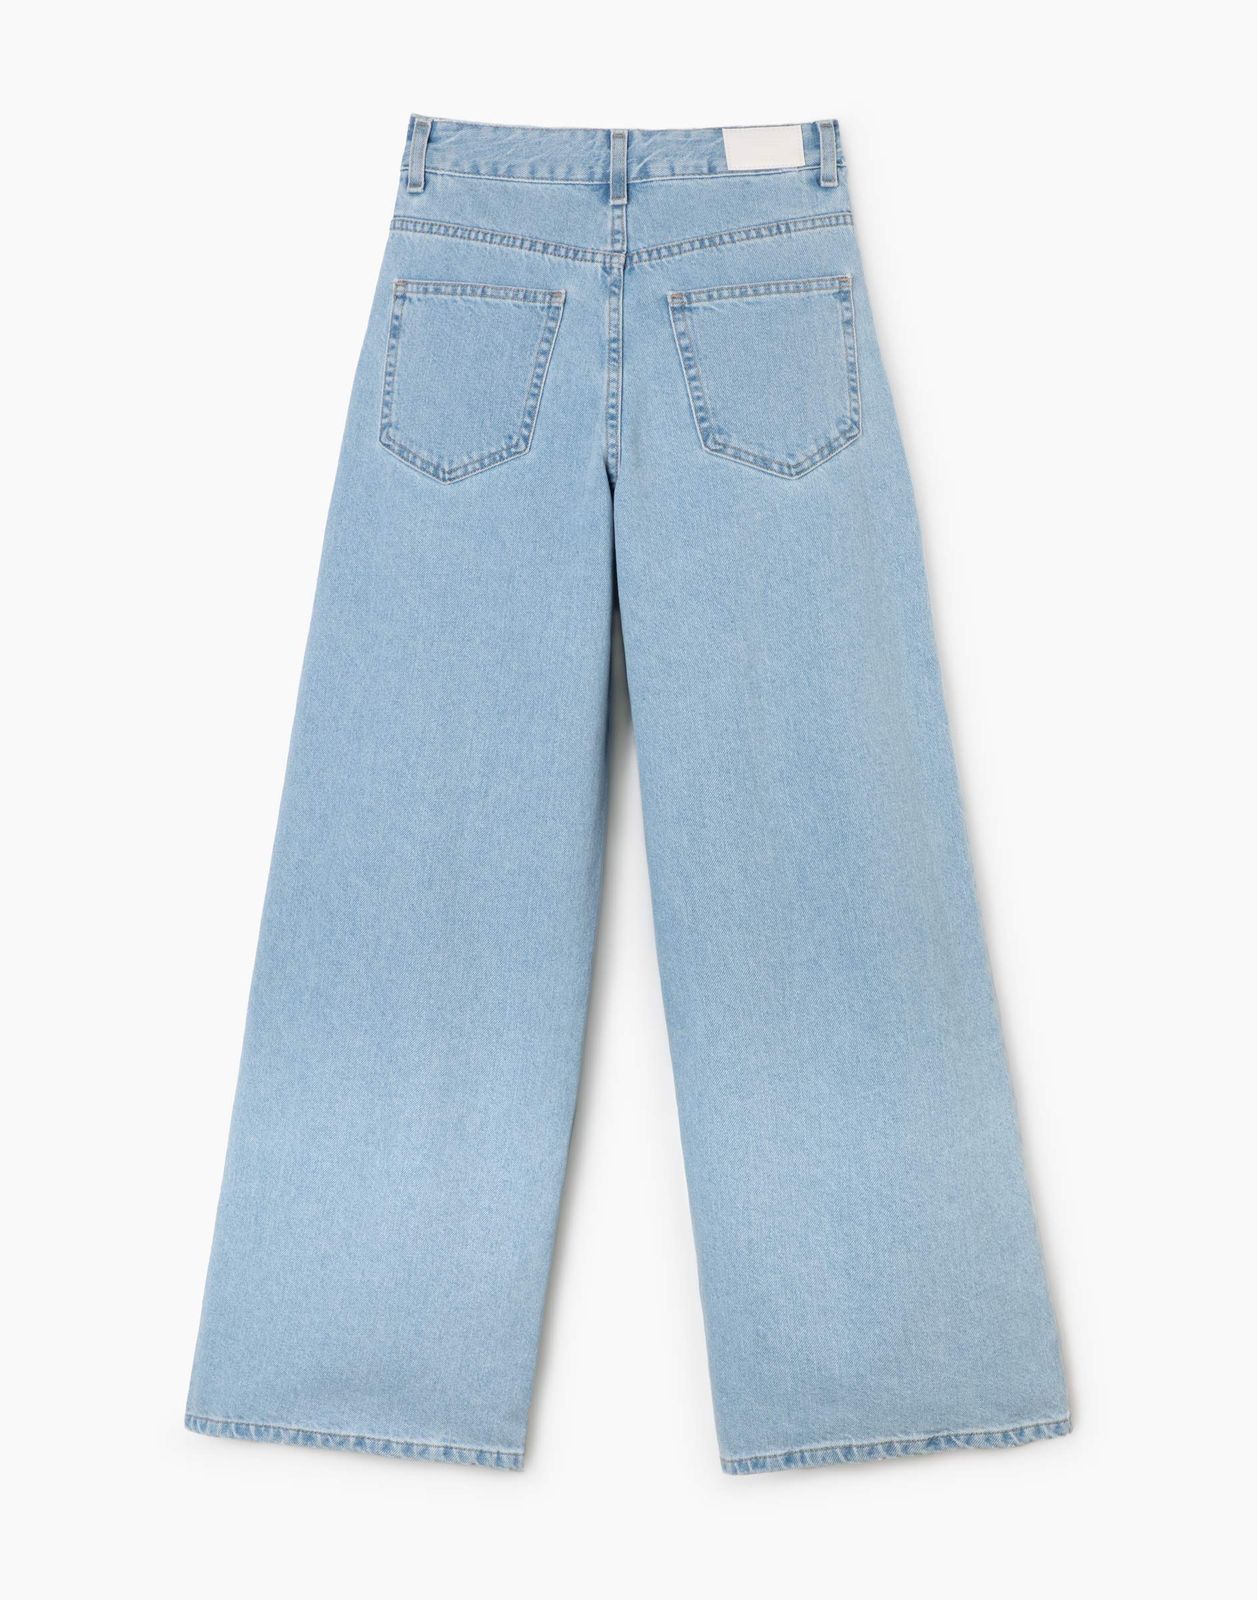 Джинсы Gloria Jeans GJN031761 синий/лайт/ 14+/164 (42) джинсы детские для девочек gloria jeans gwb001247 медиум лайт 128